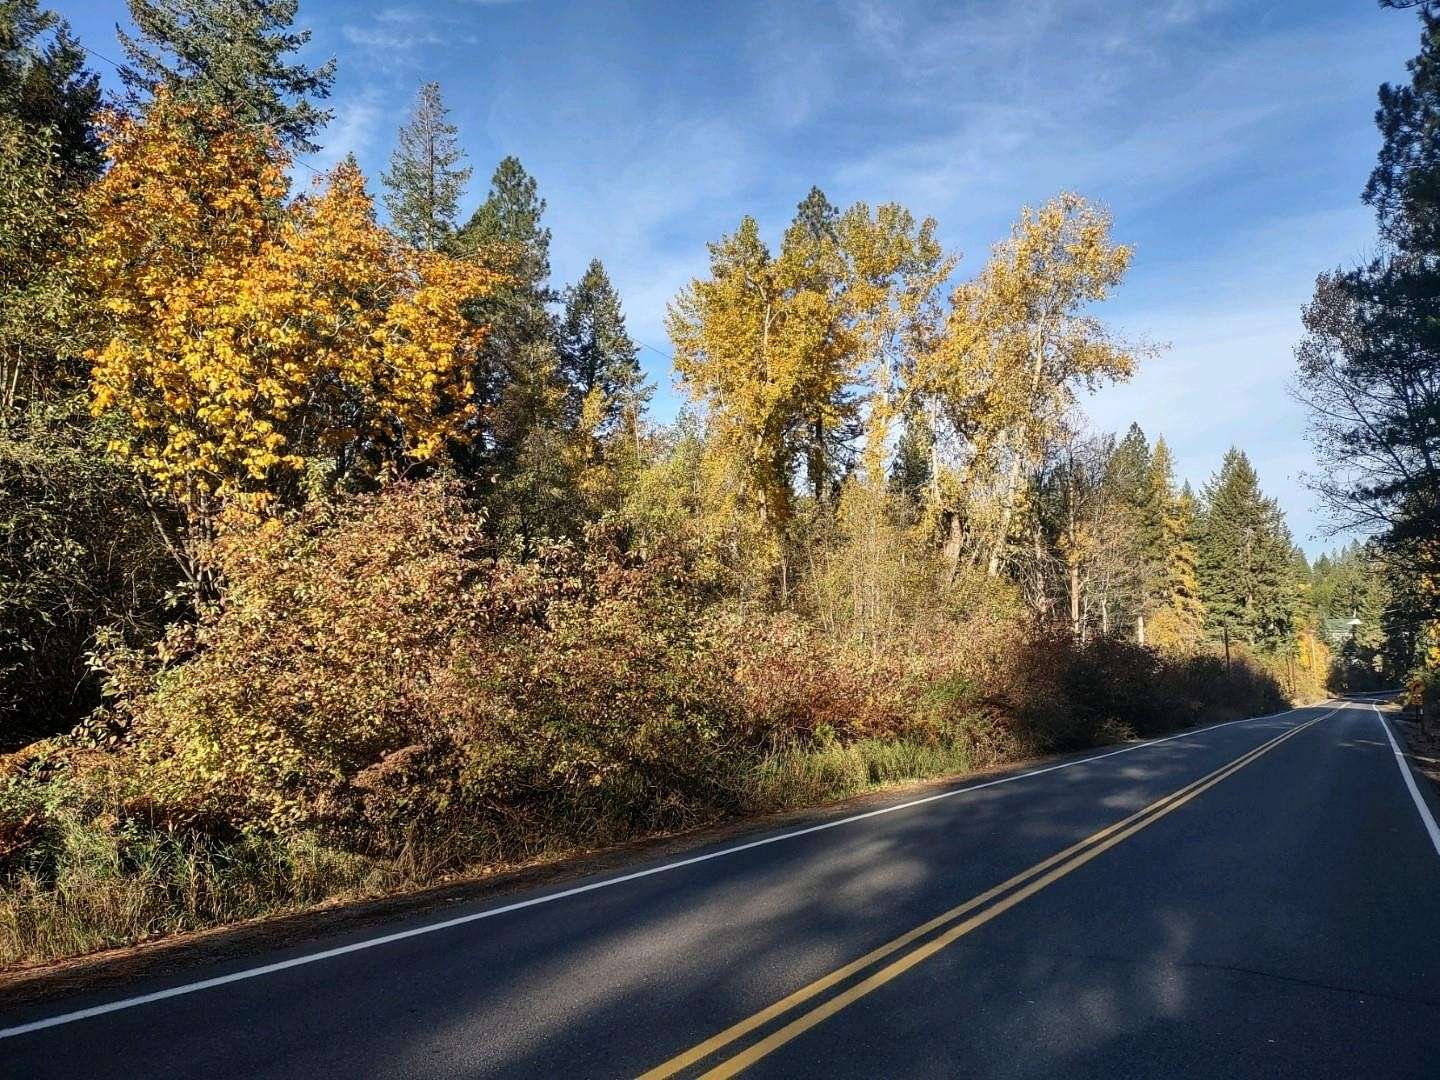 4.6 Acres of Land for Sale in Deer Park, Washington